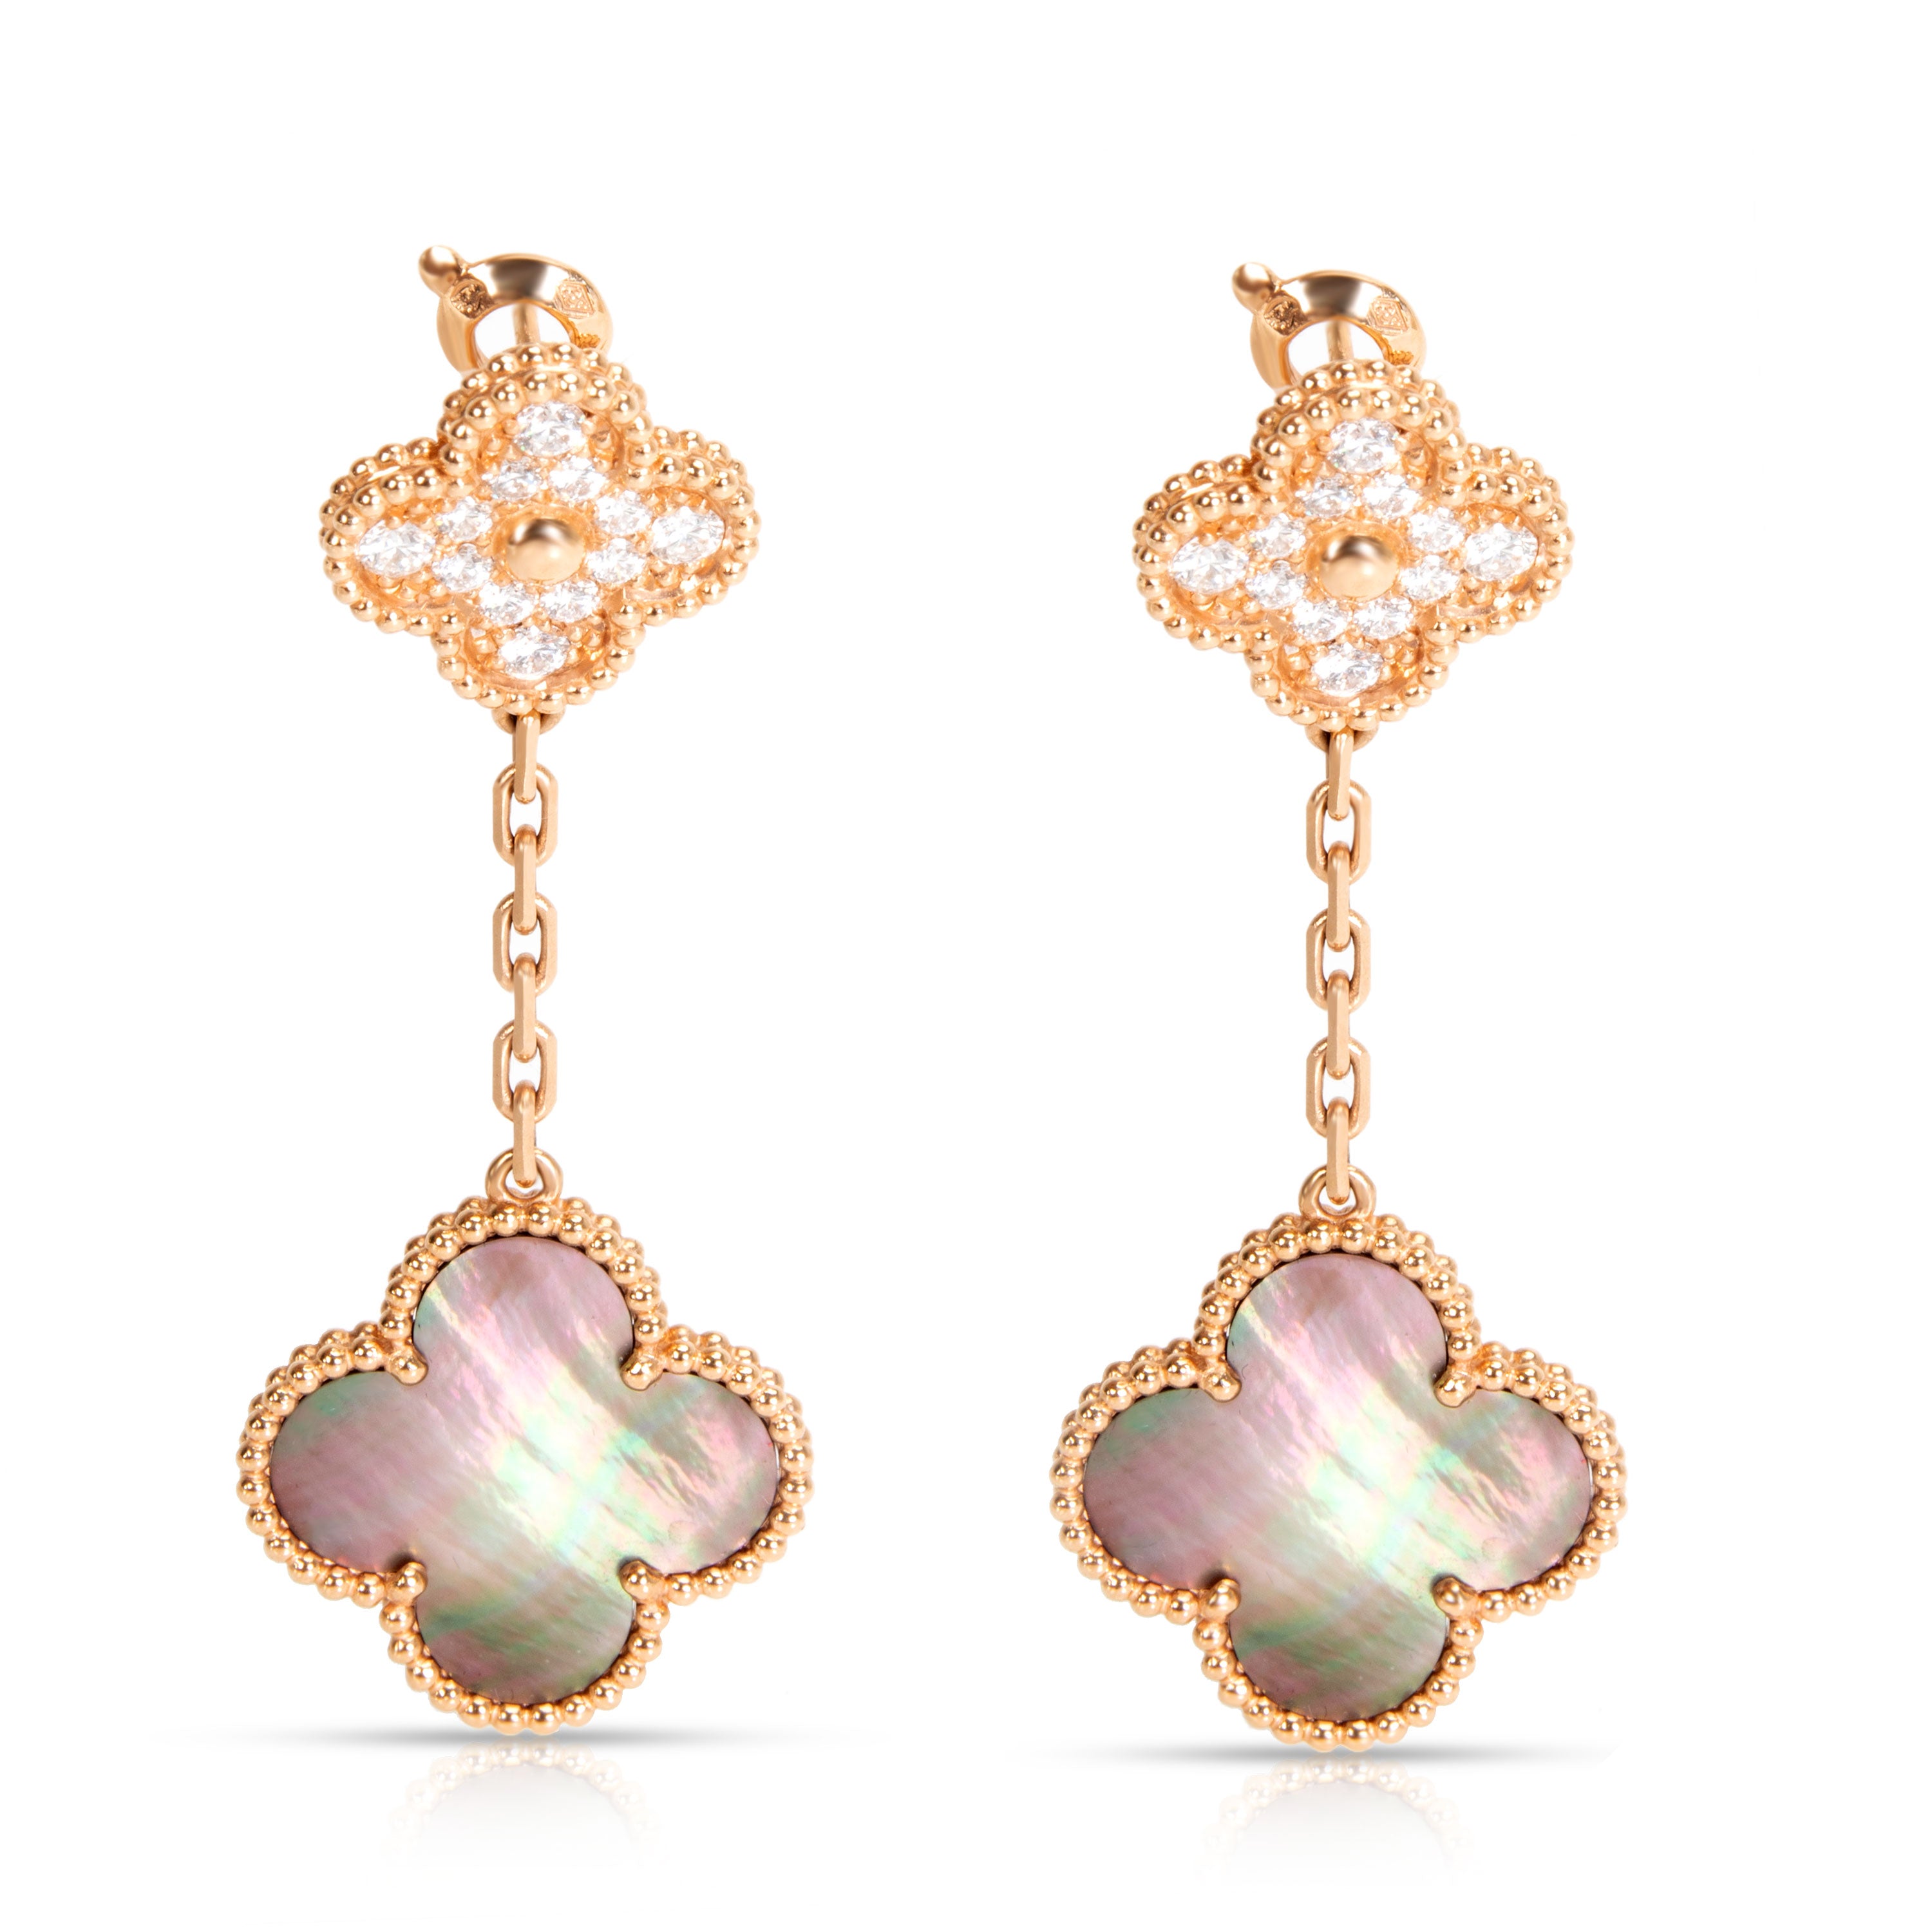 Van Cleef & Arpels Magic Alhambra earrings 2 motifs